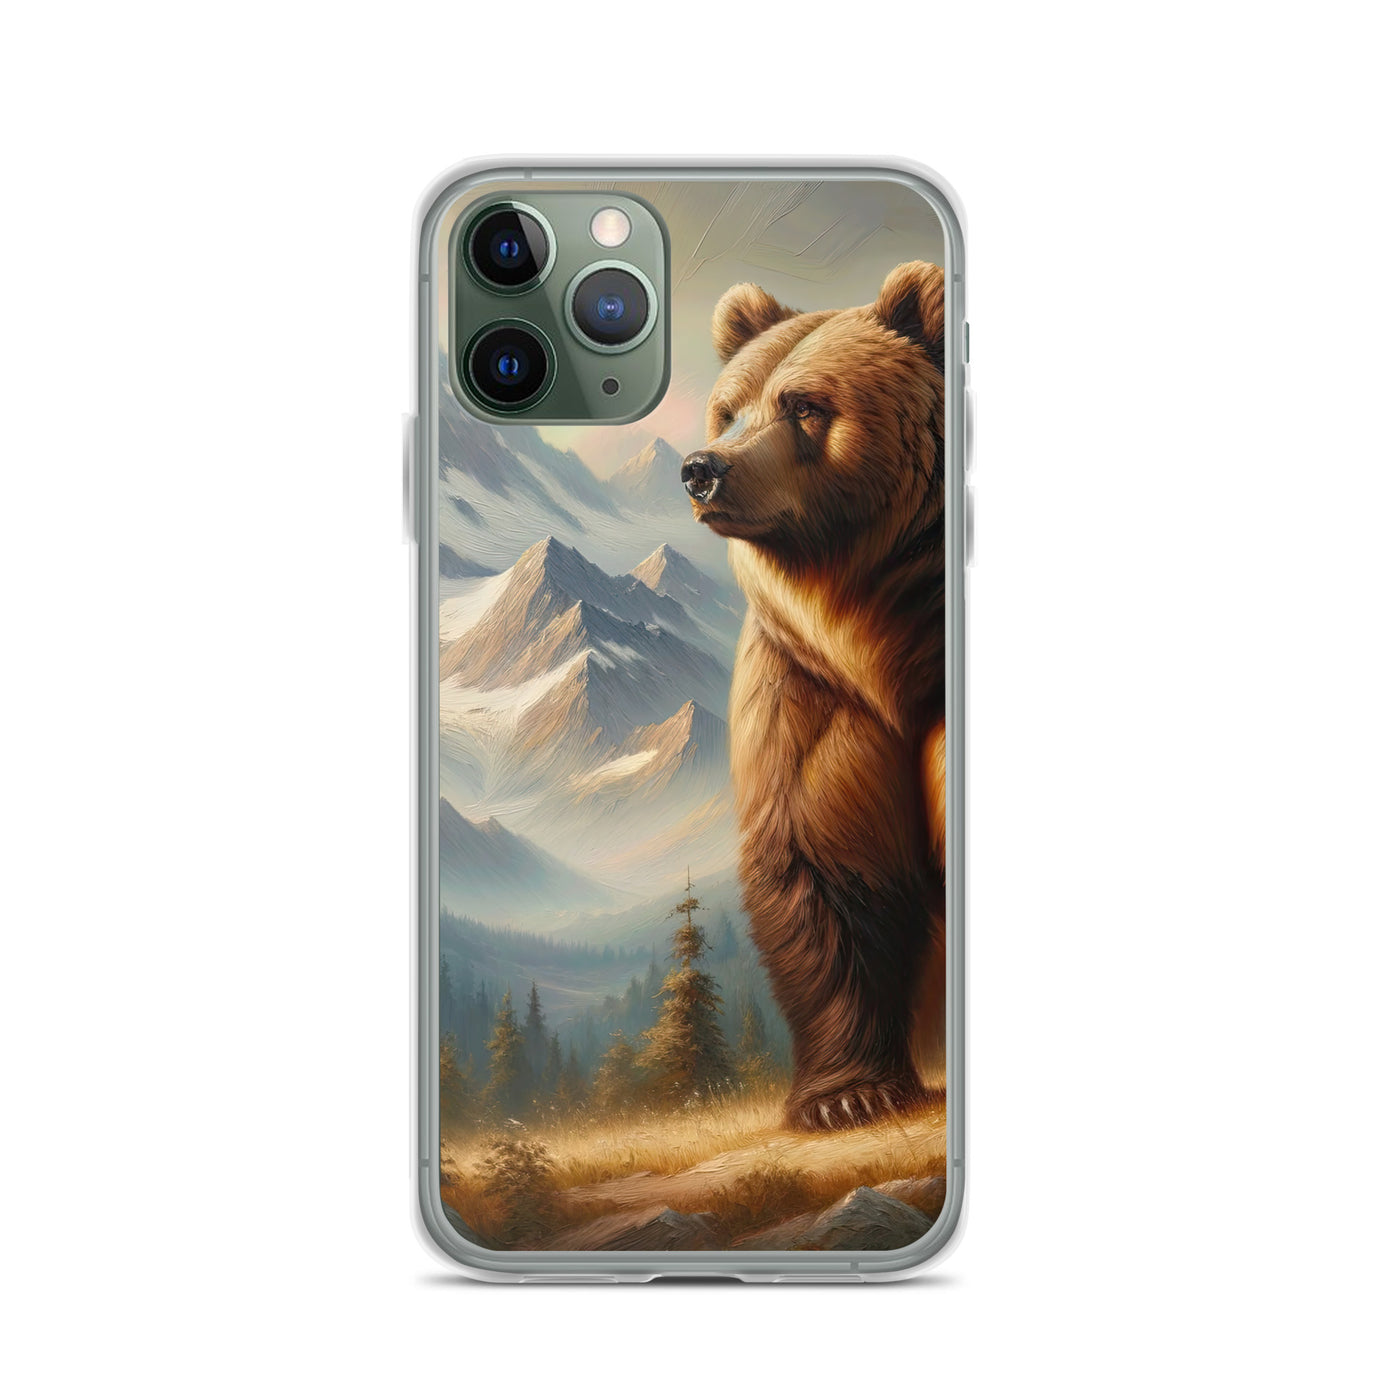 Ölgemälde eines königlichen Bären vor der majestätischen Alpenkulisse - iPhone Schutzhülle (durchsichtig) camping xxx yyy zzz iPhone 11 Pro